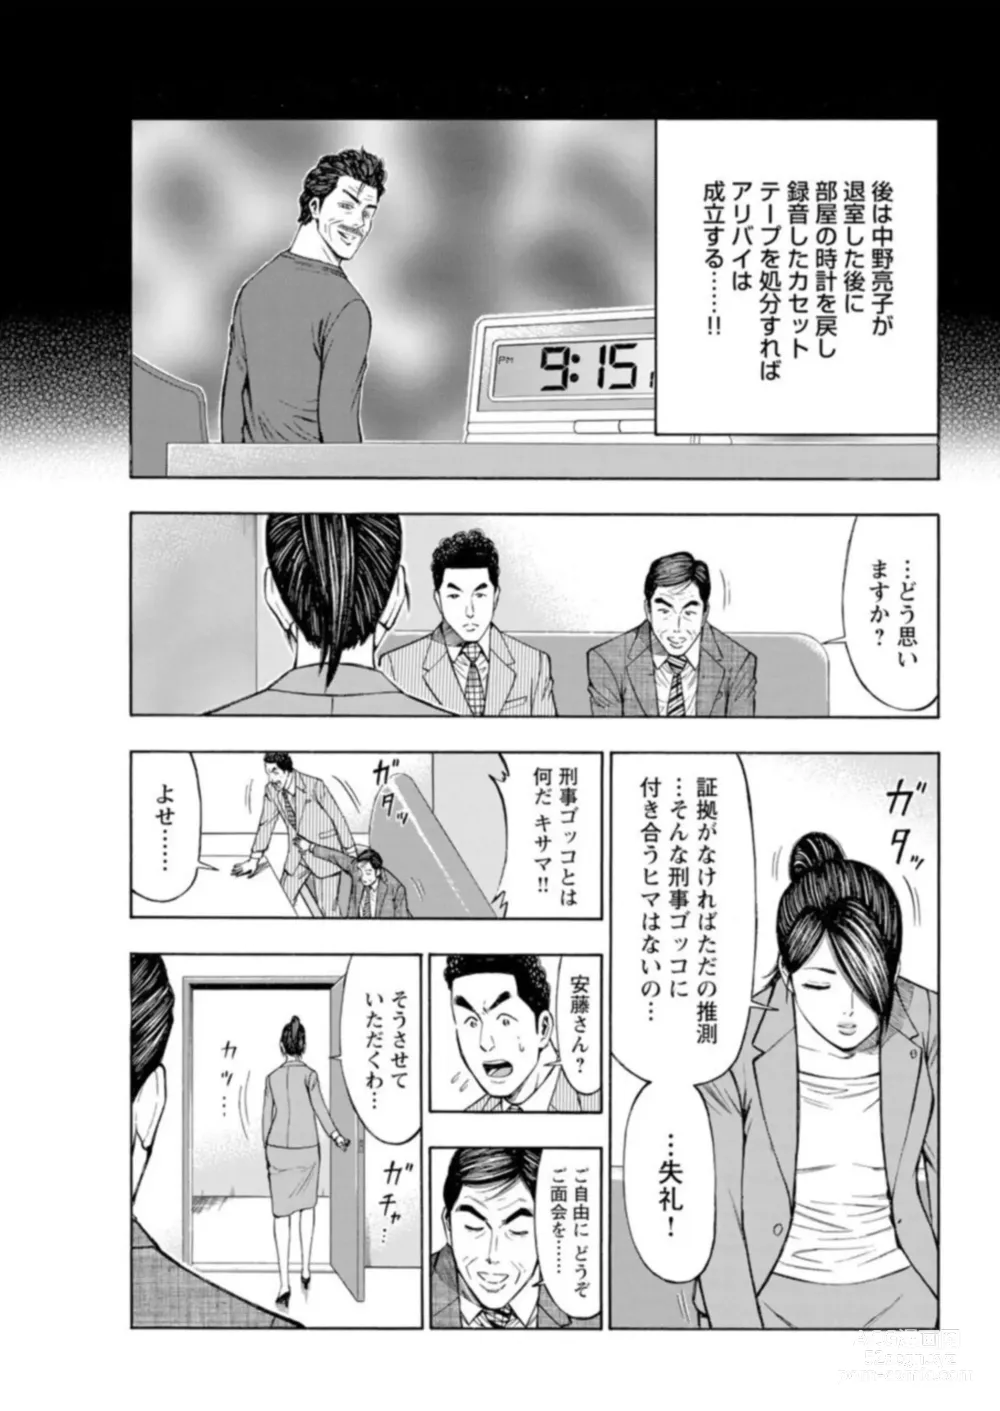 Page 231 of manga Muriyari Wakan de Choueki 0-nen -Onna Bengoshi Sex Chousa- 1